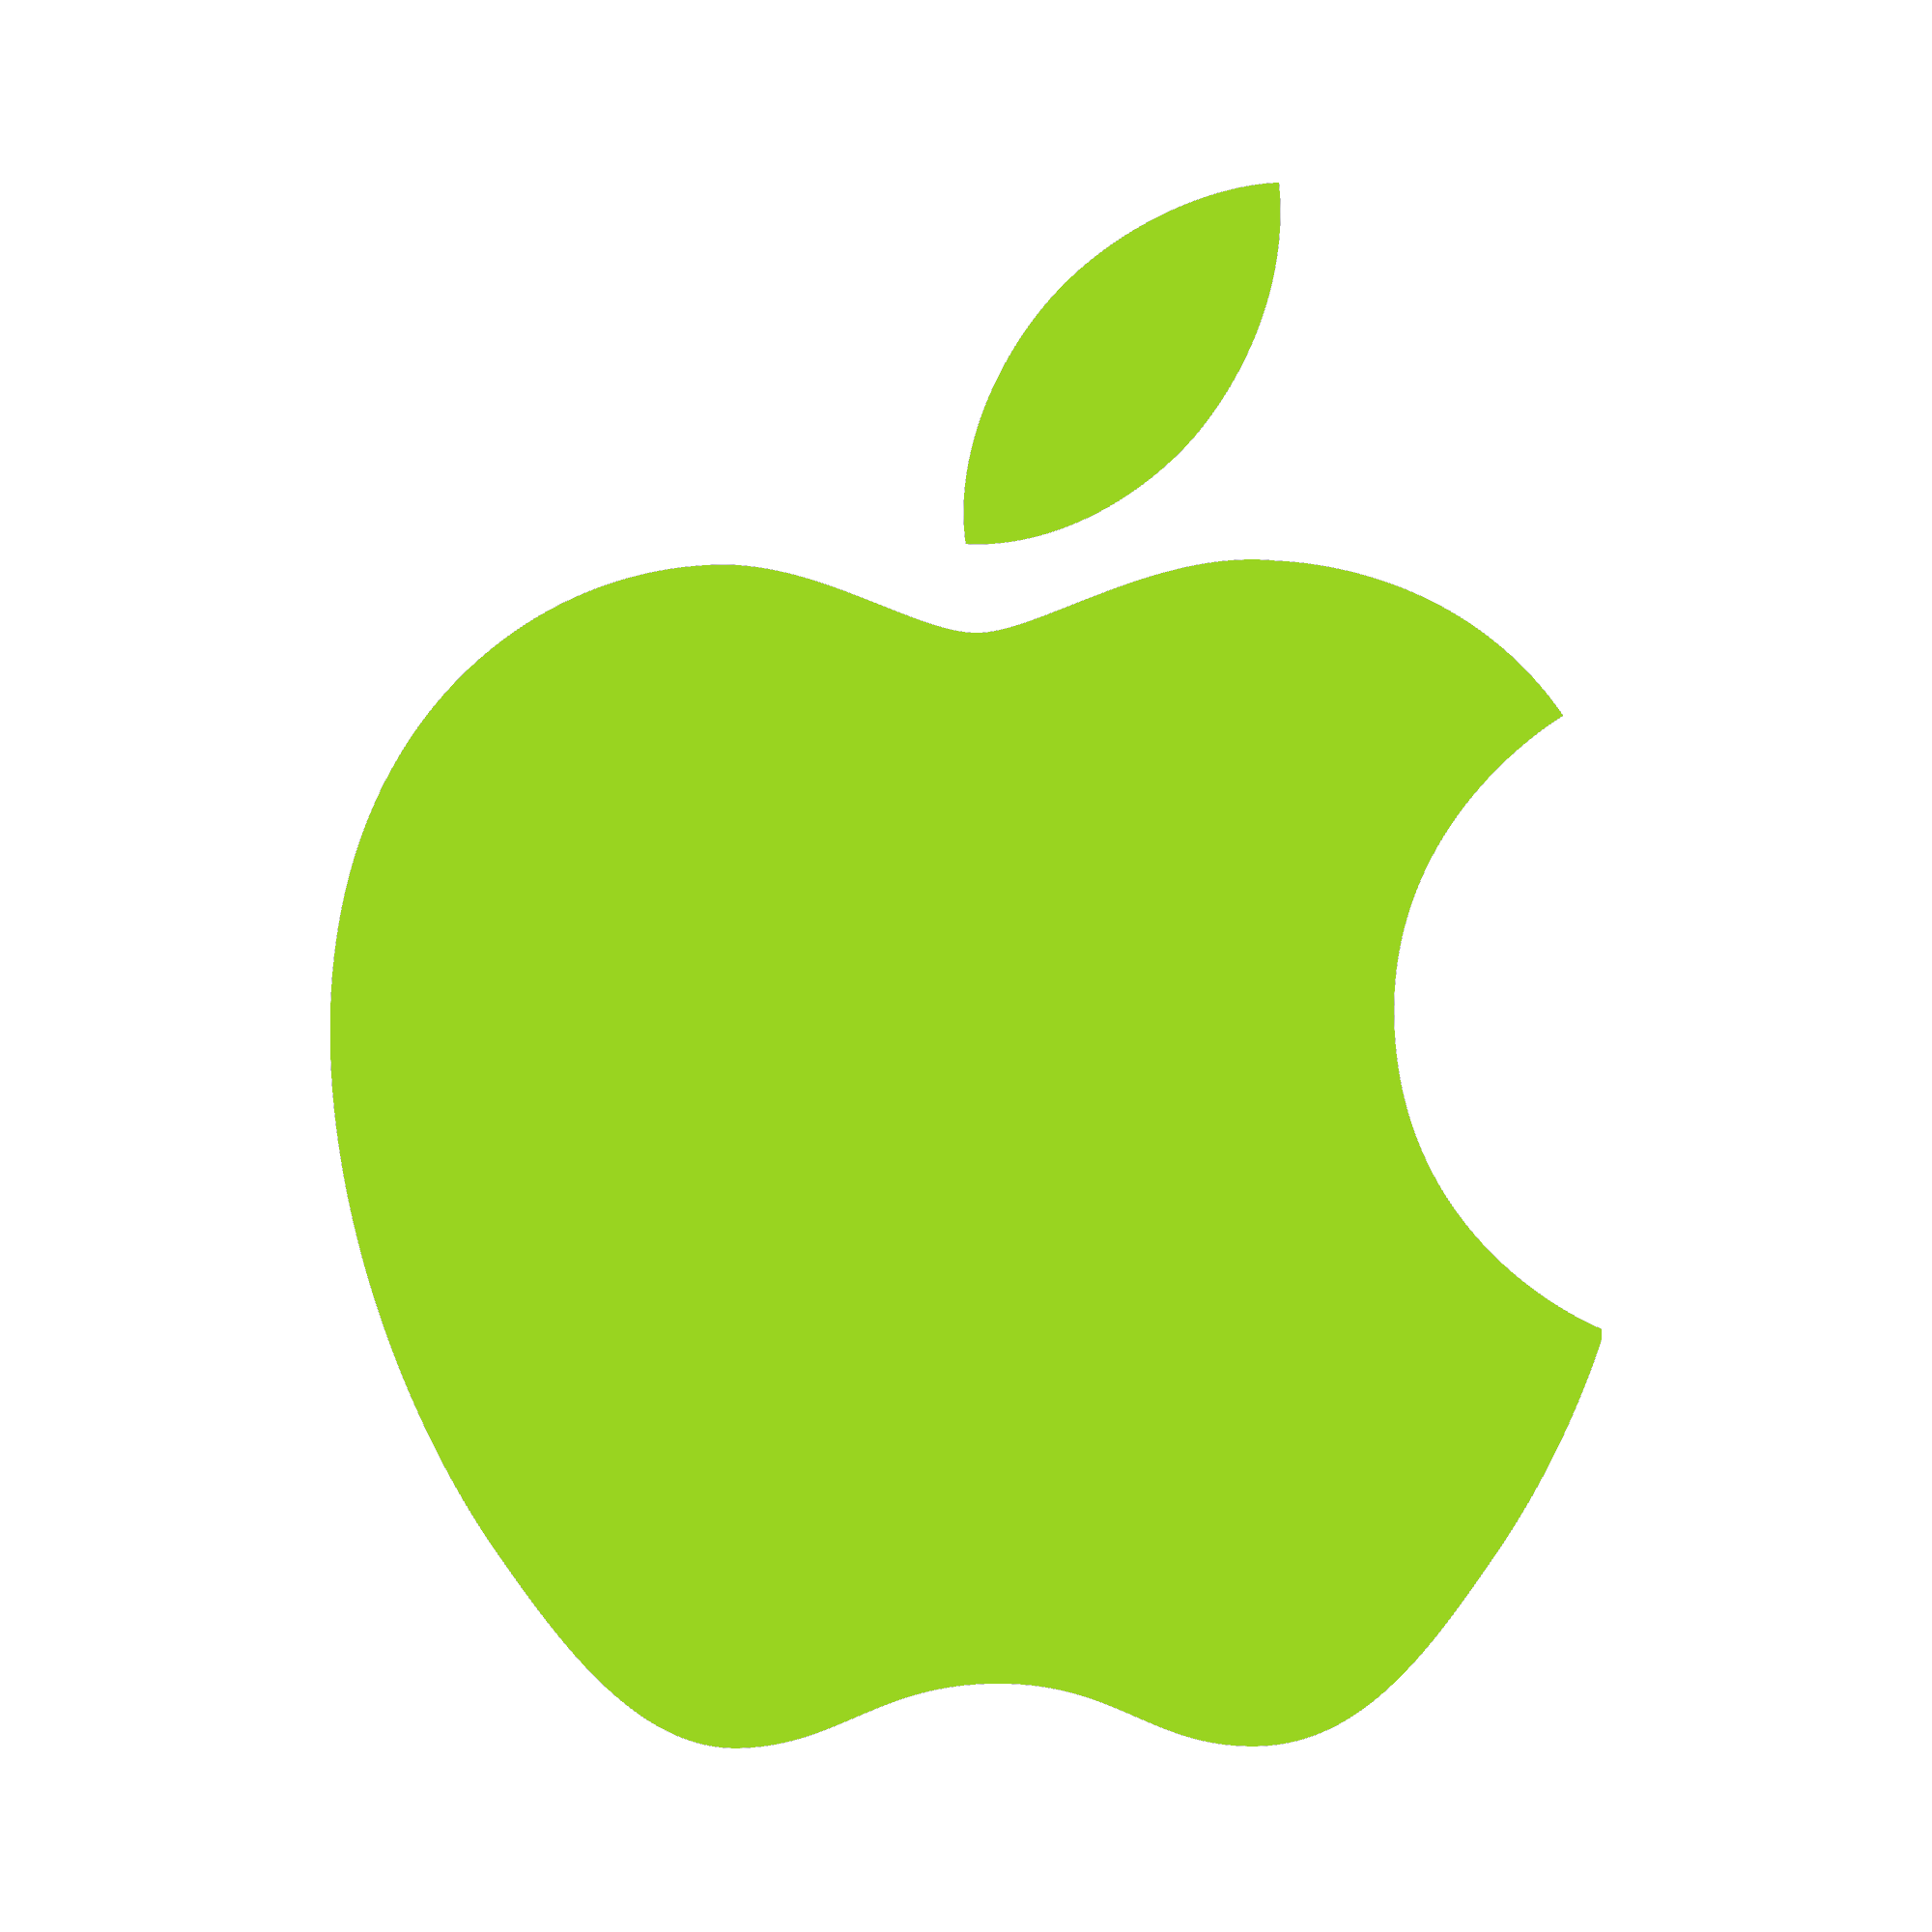 Green Apple Logo - Apple Logo Transparent Background PNG | PNG Arts